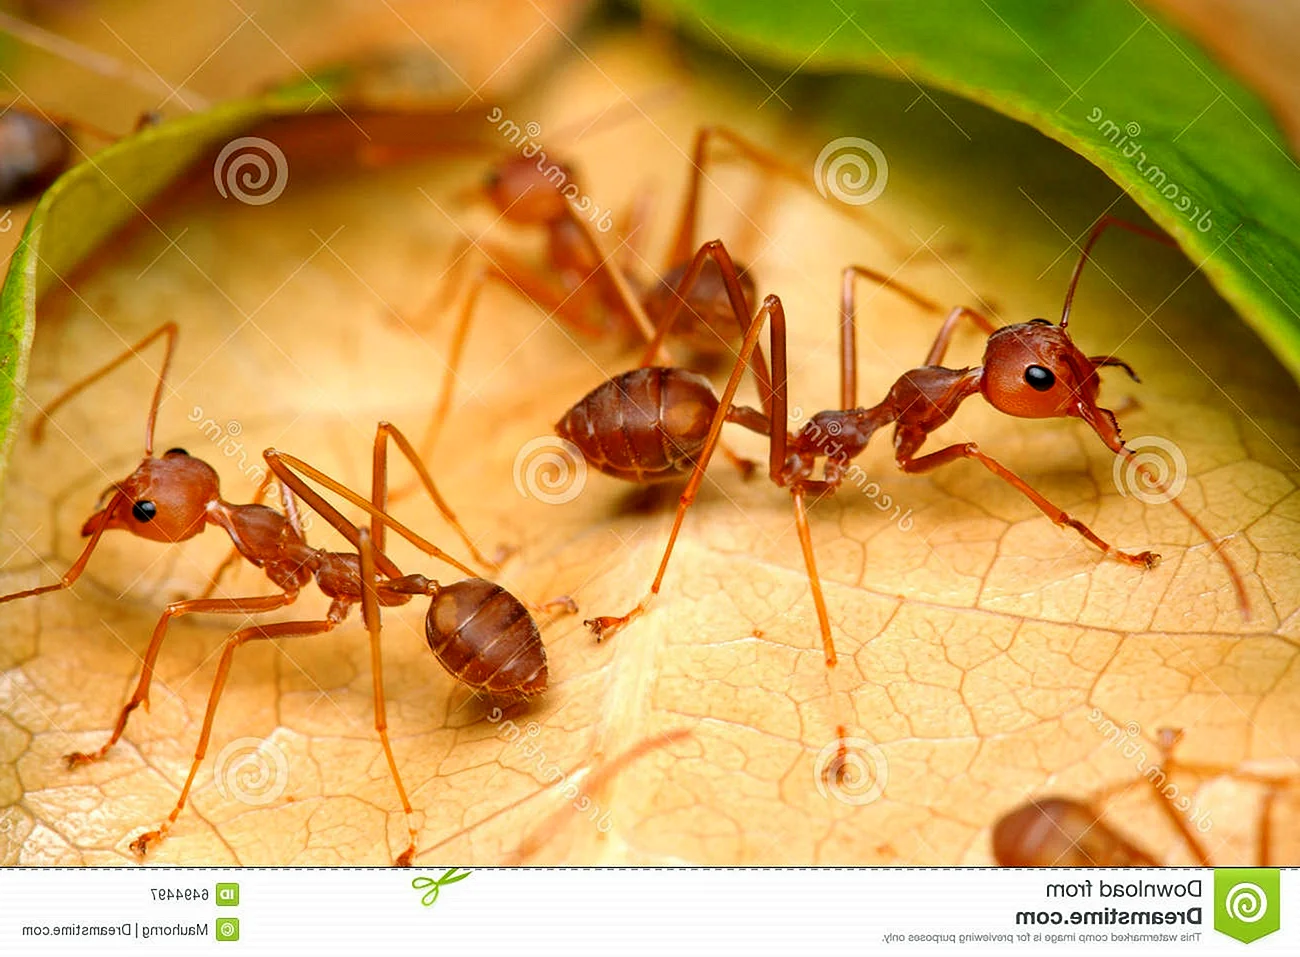 Родина фараоновых муравьев